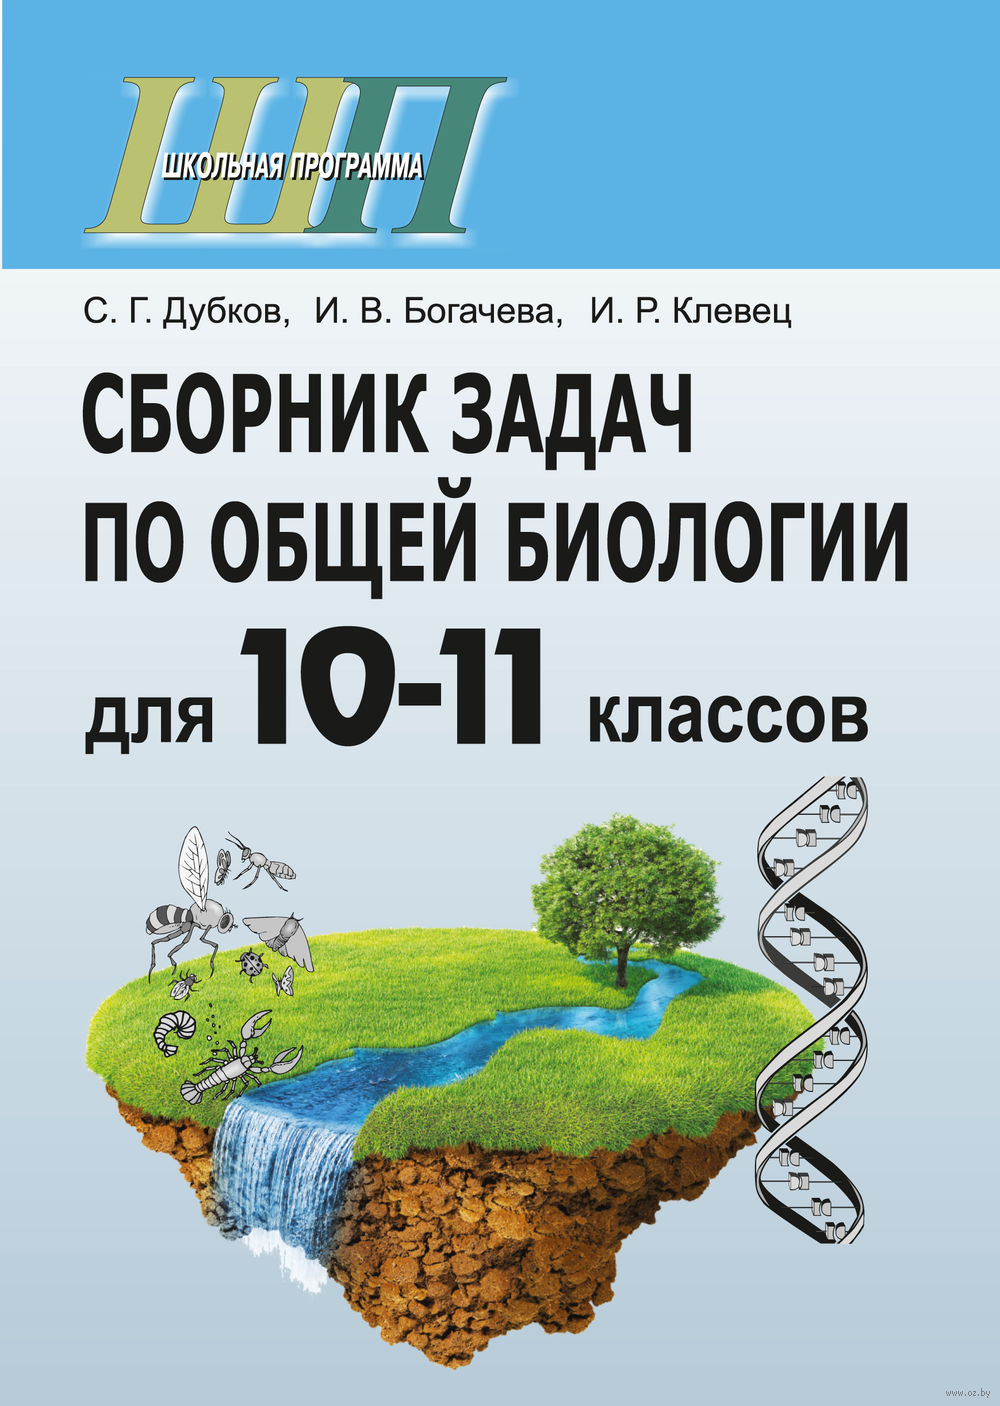 Сборник задач по общей биологии для 10-11 класса с.г дубков